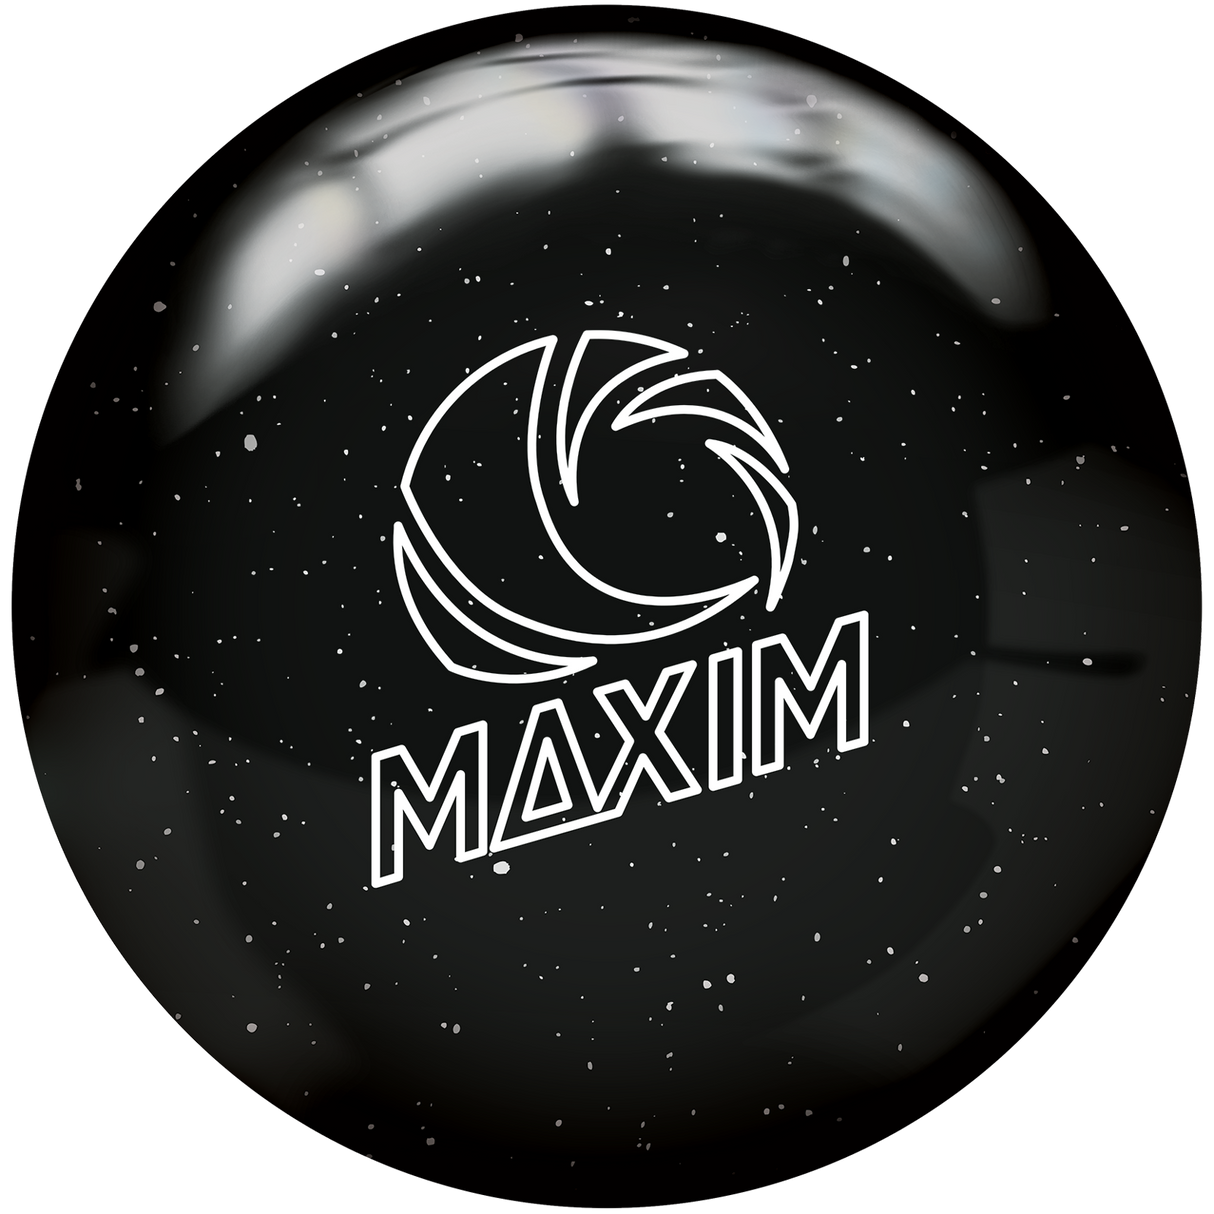 ebonite-maxim-night-sky bowling ball insidebowling.com